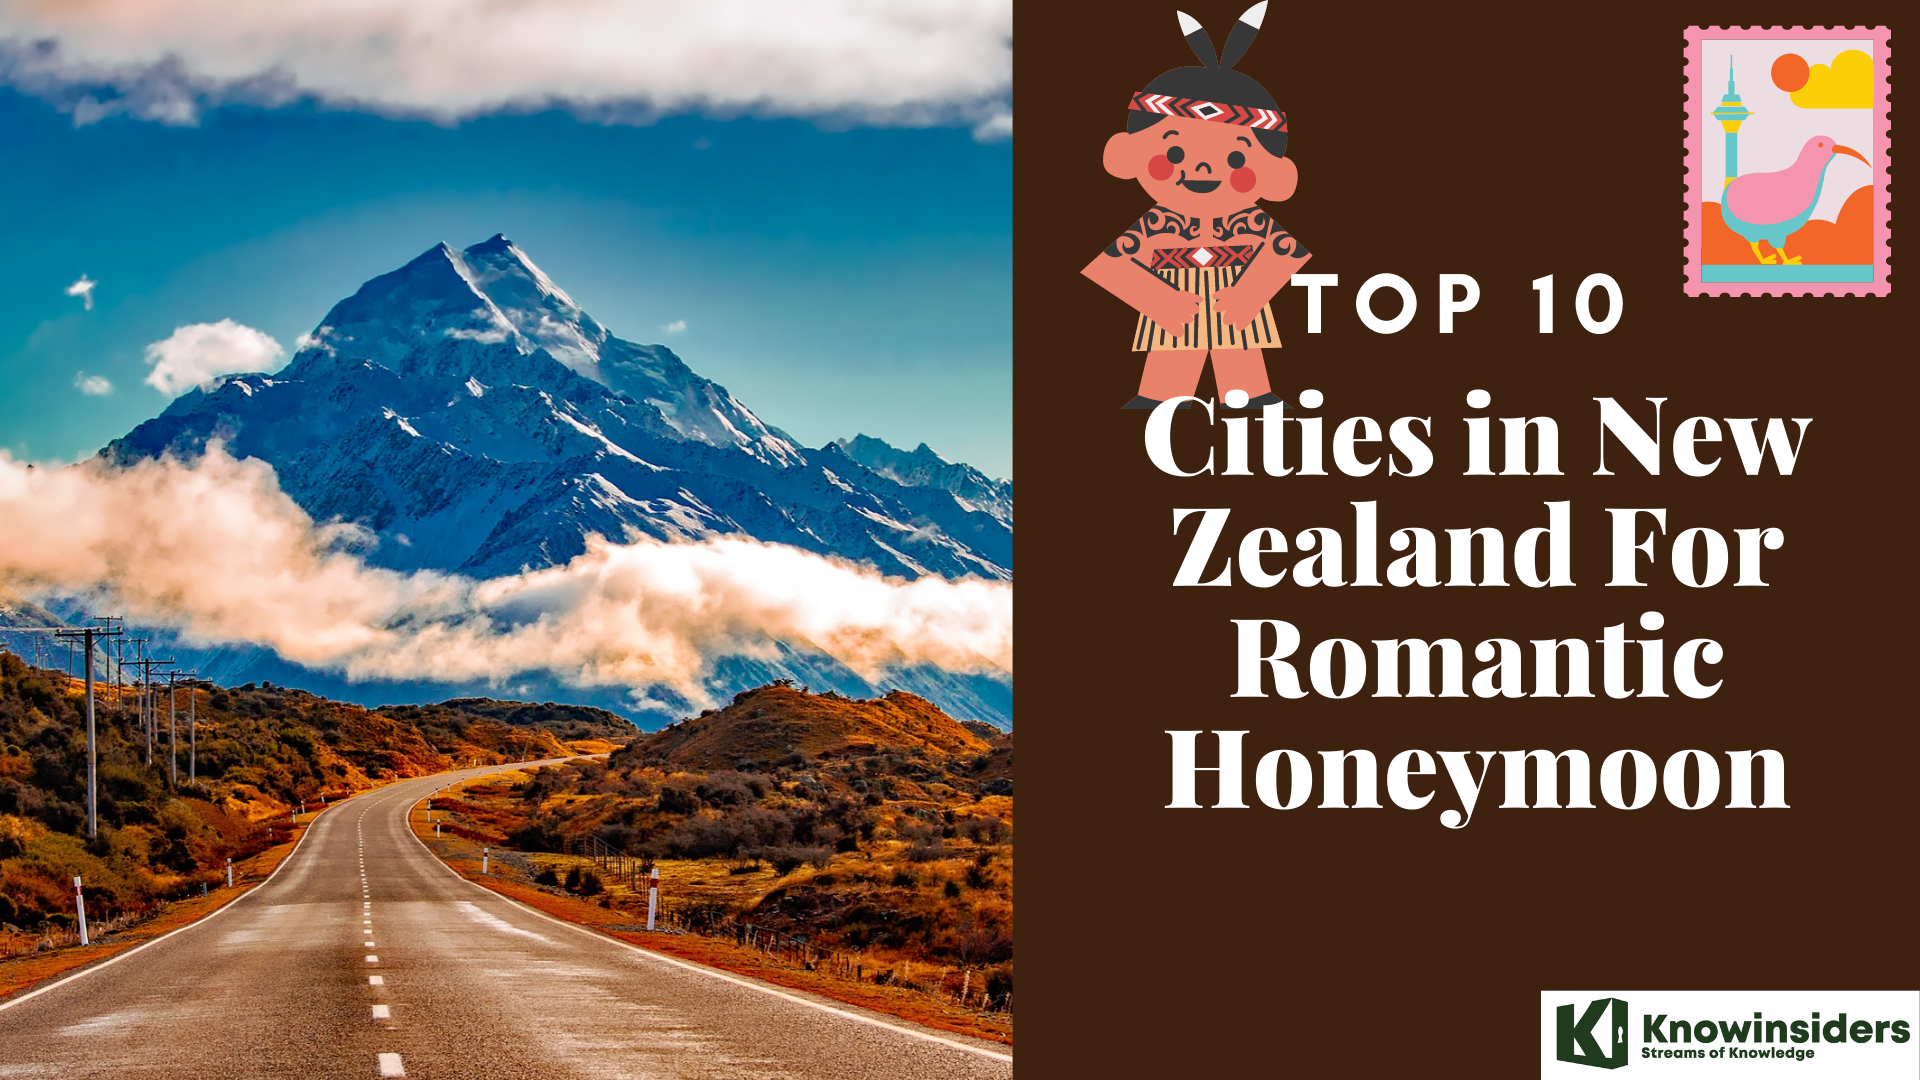 Top 10 Cities in New Zealand For Romantic Honeymoon